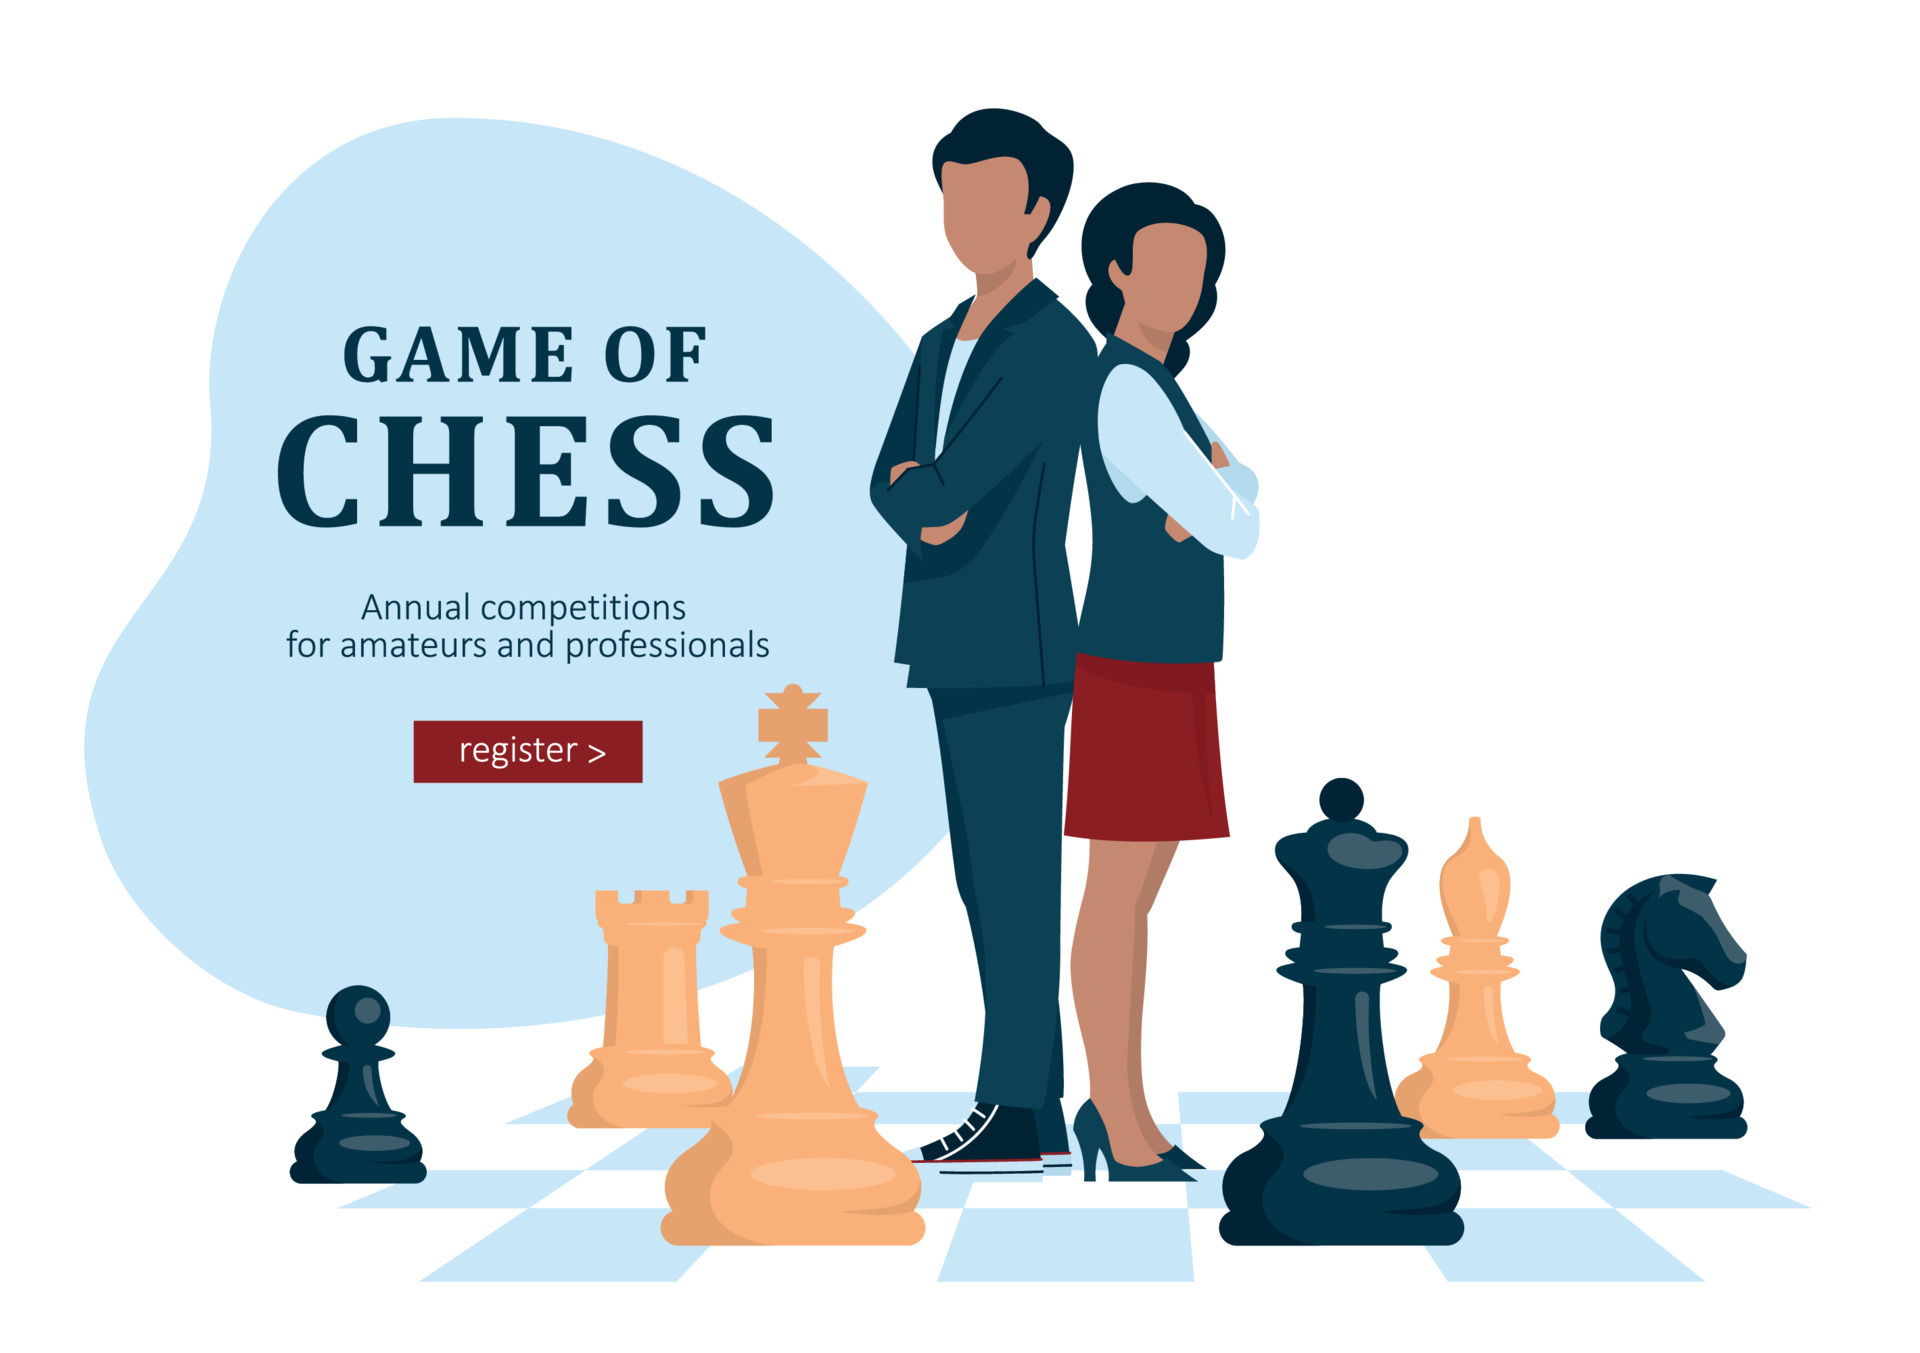 Schachspiel, Strategie. der typ und das mädchen stehen mit dem rücken zueinander und verschränken die arme vor der brust. Menschen stehen zwischen den Schachfiguren